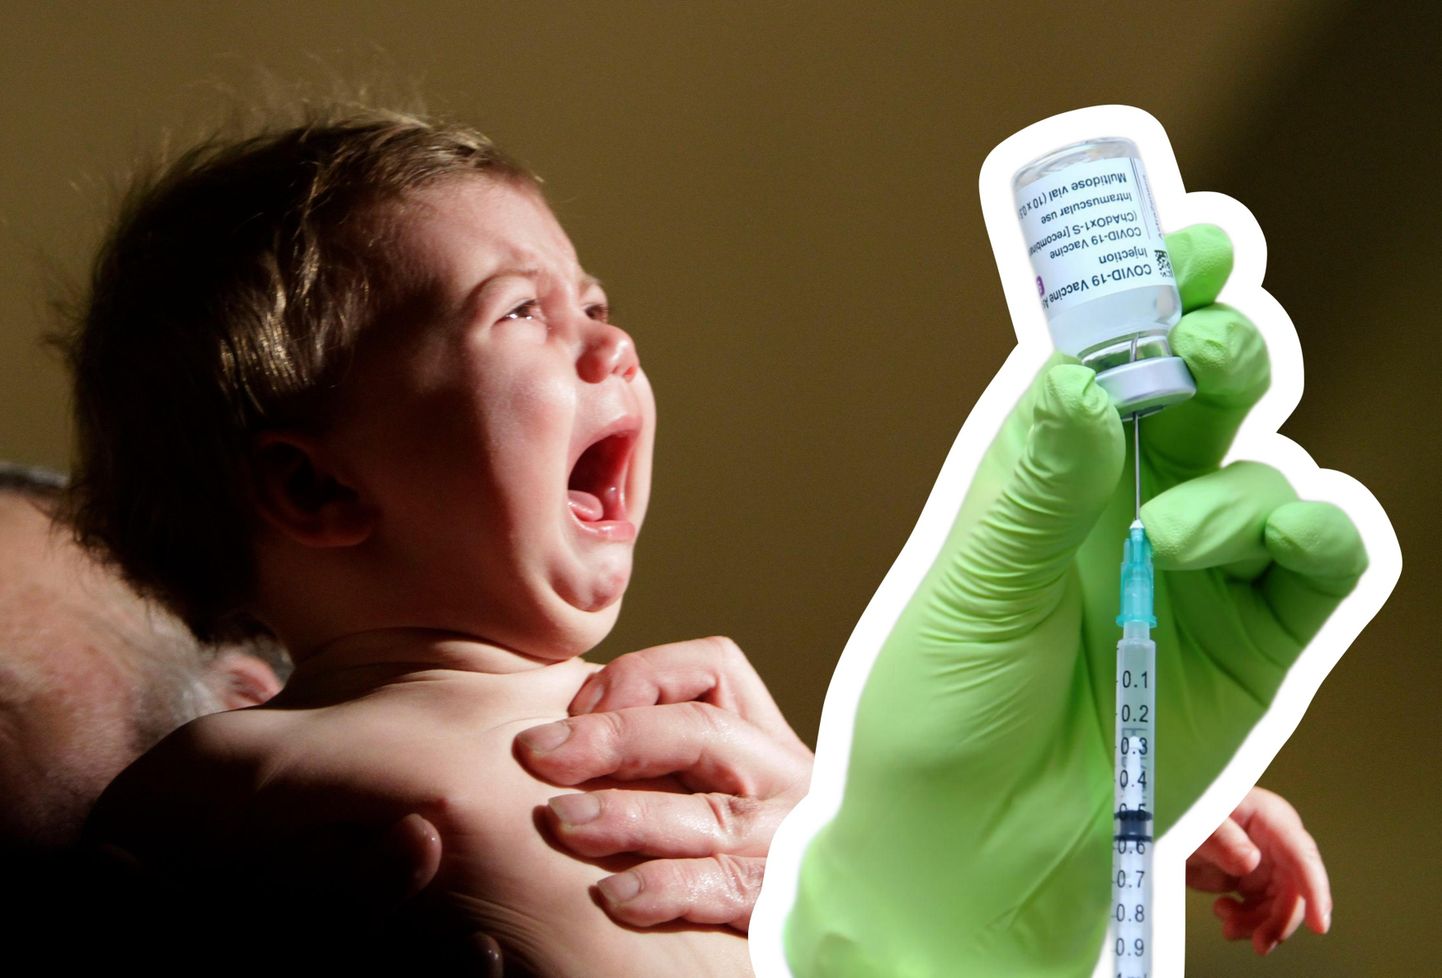 Vanemad keelduvad arstidel anda lapsele vaktsineeritud inimese verd. Pilt on illustreeriv!